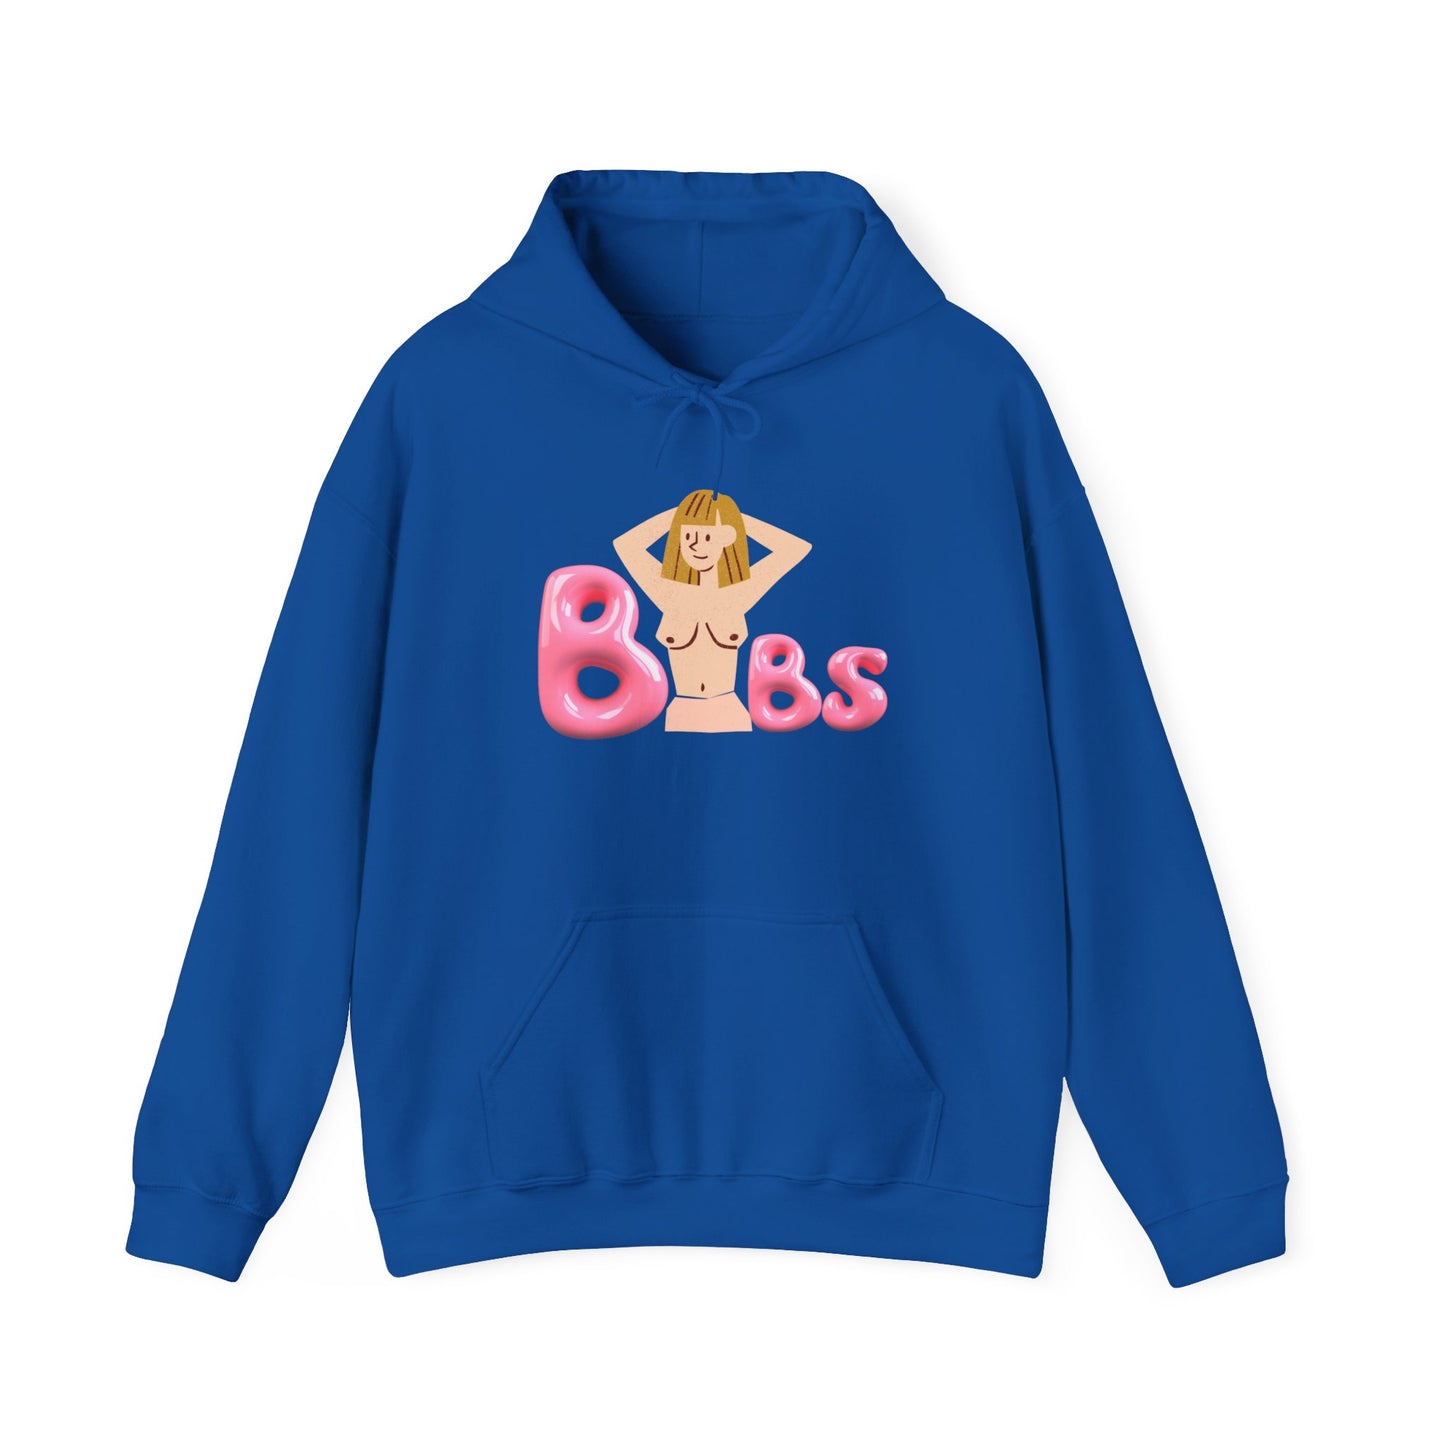 "Buubs" Hooded Sweatshirt II